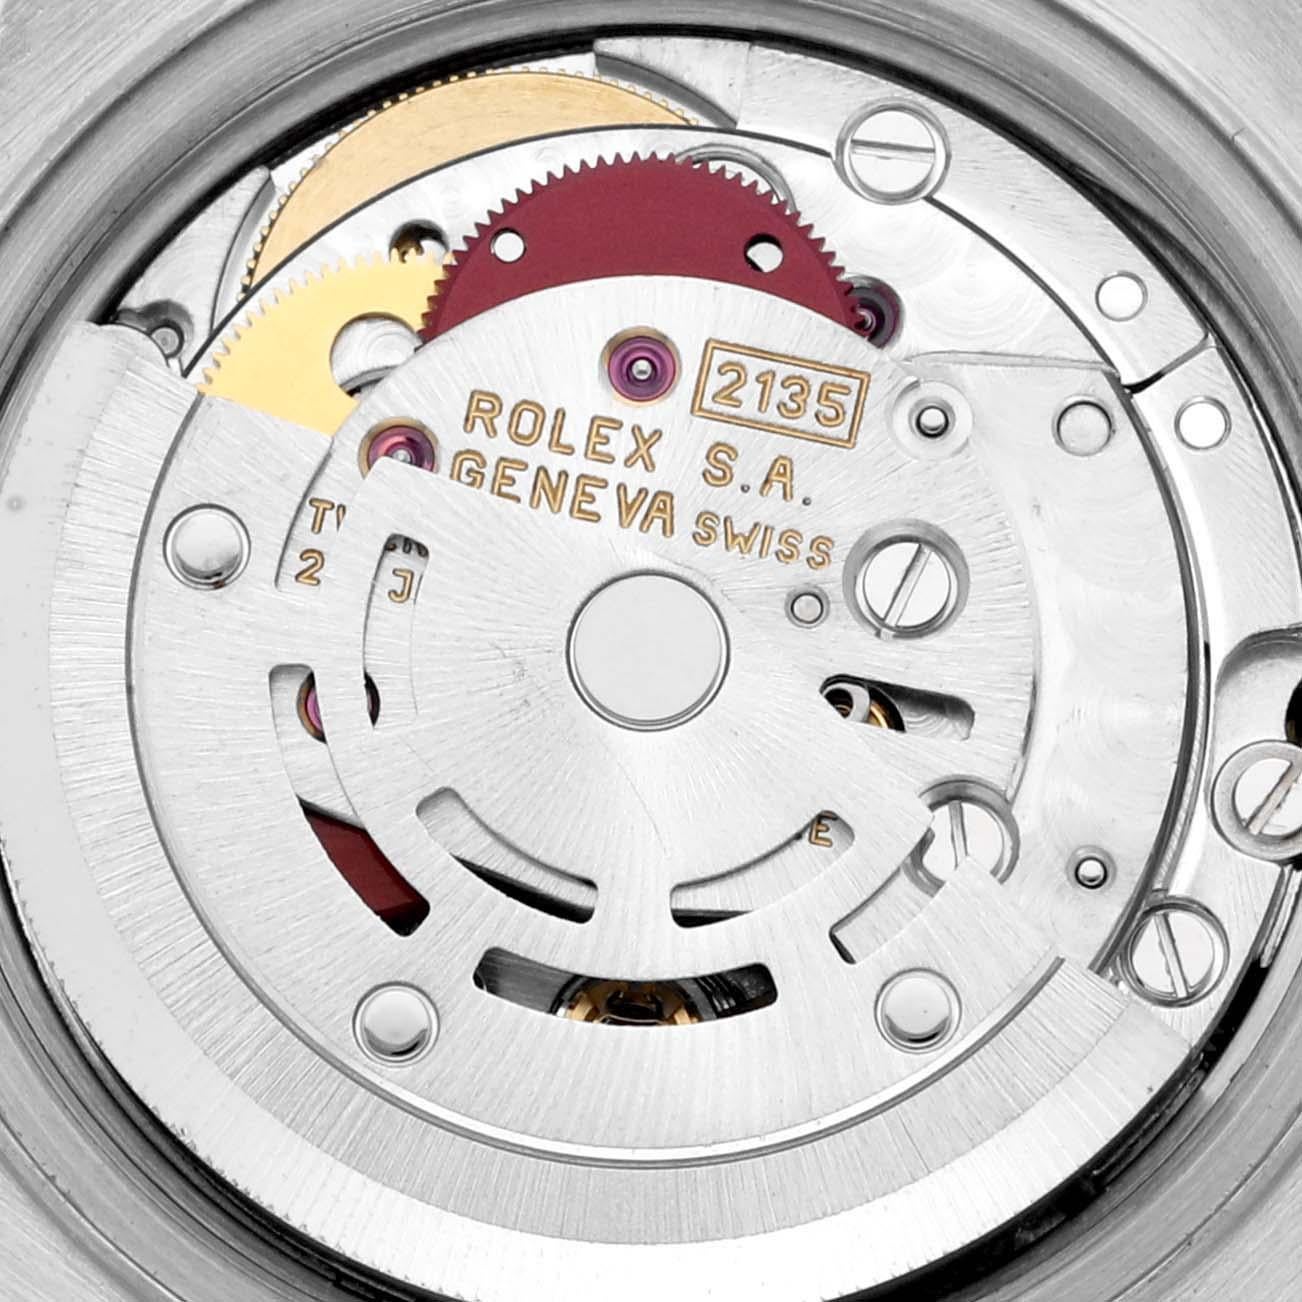 Rolex Datejust Mutter der Perle Zifferblatt Stahl Gelbgold Damenuhr 69173 Box Papiere. Offiziell zertifiziertes Chronometerwerk mit automatischem Aufzug. Austerngehäuse aus Edelstahl mit einem Durchmesser von 26.0 mm. Rolex Logo auf der Krone.